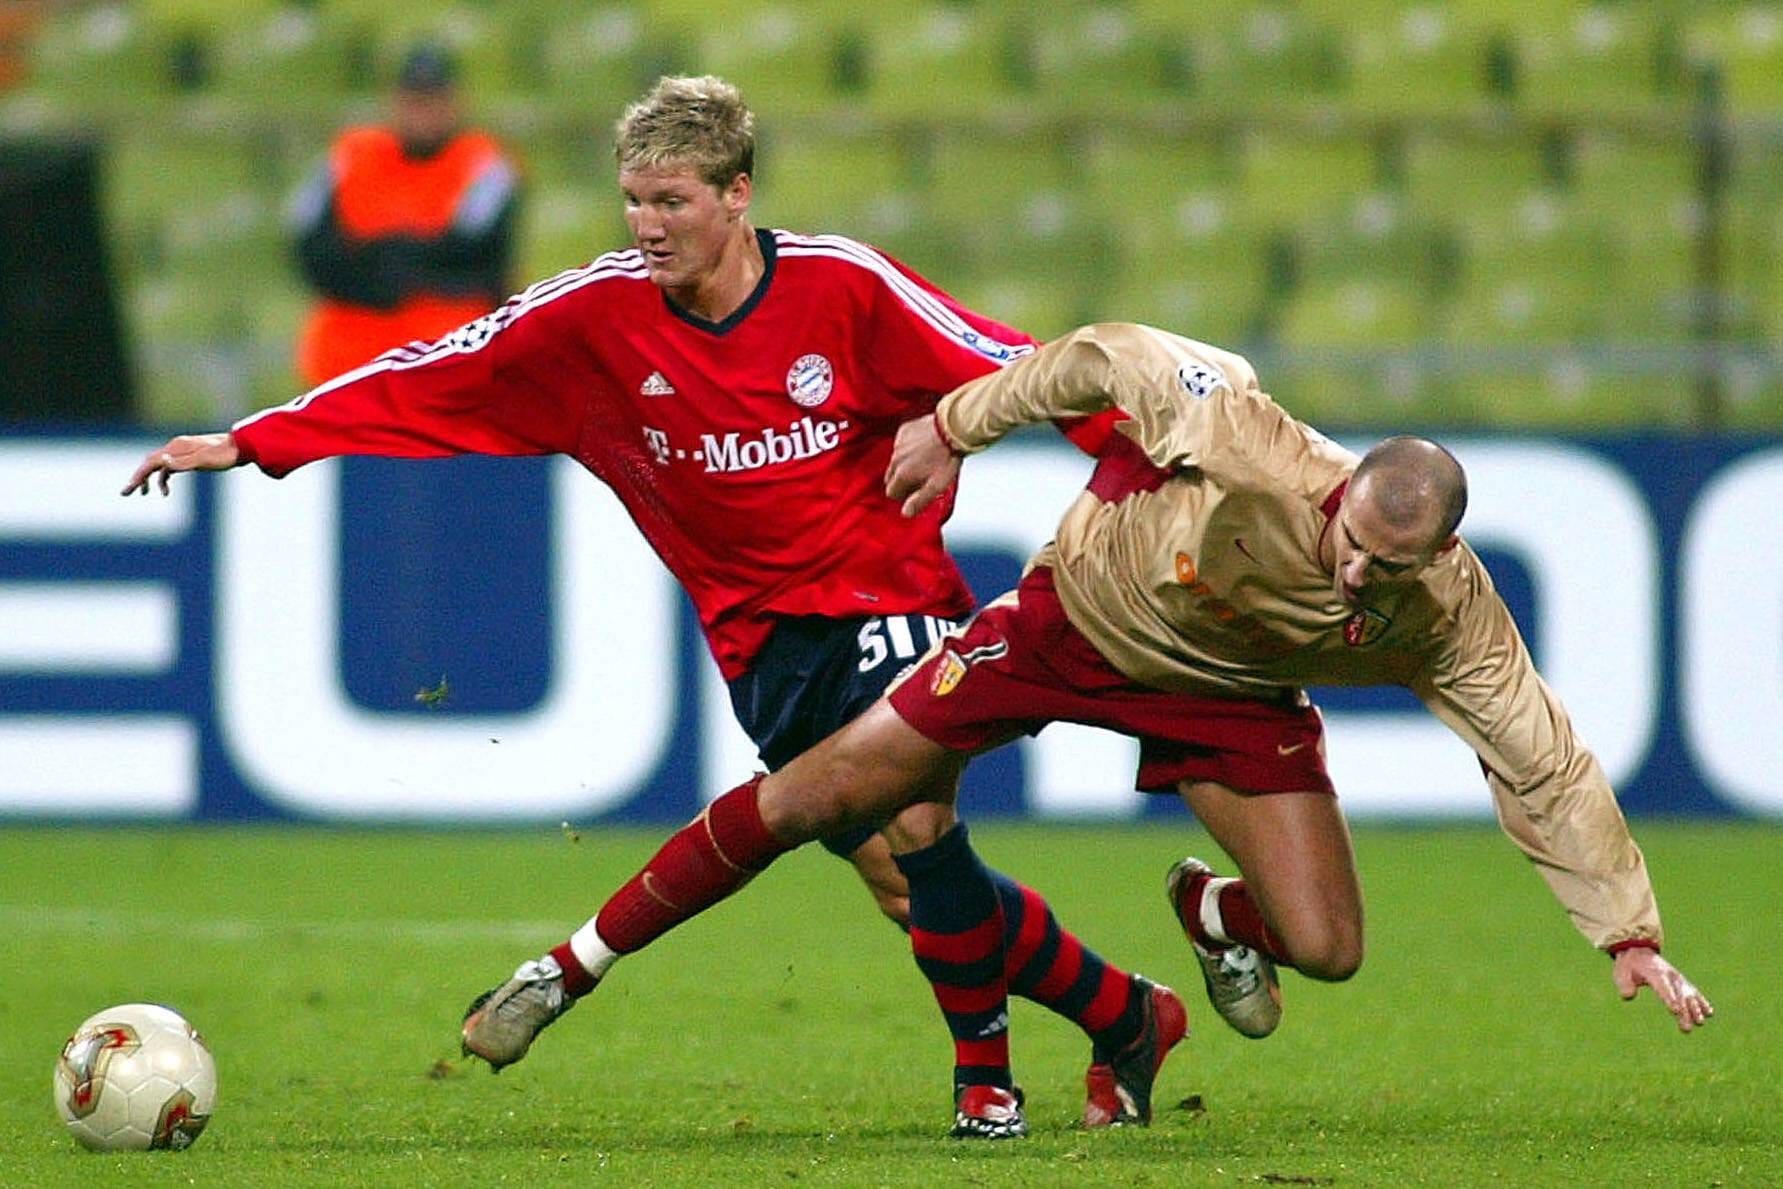 Am 13. November 2002 gab Schweinsteiger sein Debüt im Champions-League-Spiel gegen den RC Lens, als er in der 76. Minute für Bayern-Legende Mehmet Scholl eingewechselt wurde. Damals stand Ottmar Hitzfeld in seiner ersten Amtszeit bei den Bayern an der Seitenlinie.